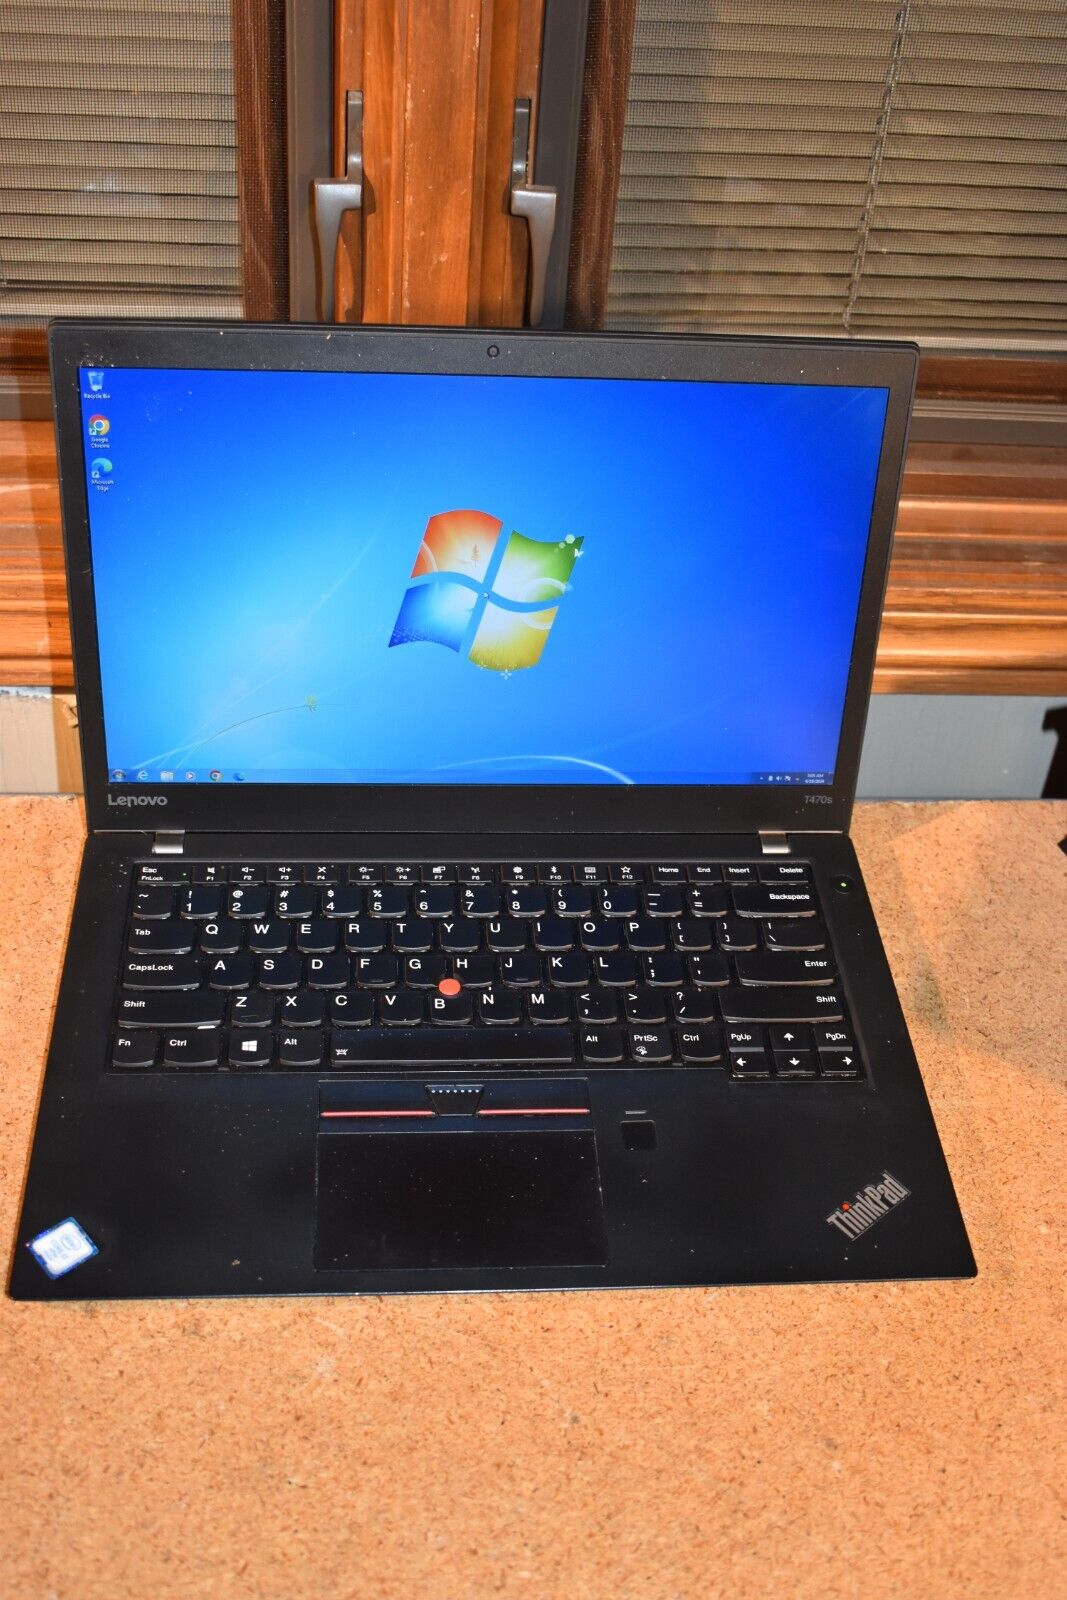 Lenovo ThinkPad T470s Core i7-6600U 2.6GHz 4GB 256GB SSD Windows 7 Pro 32-bit